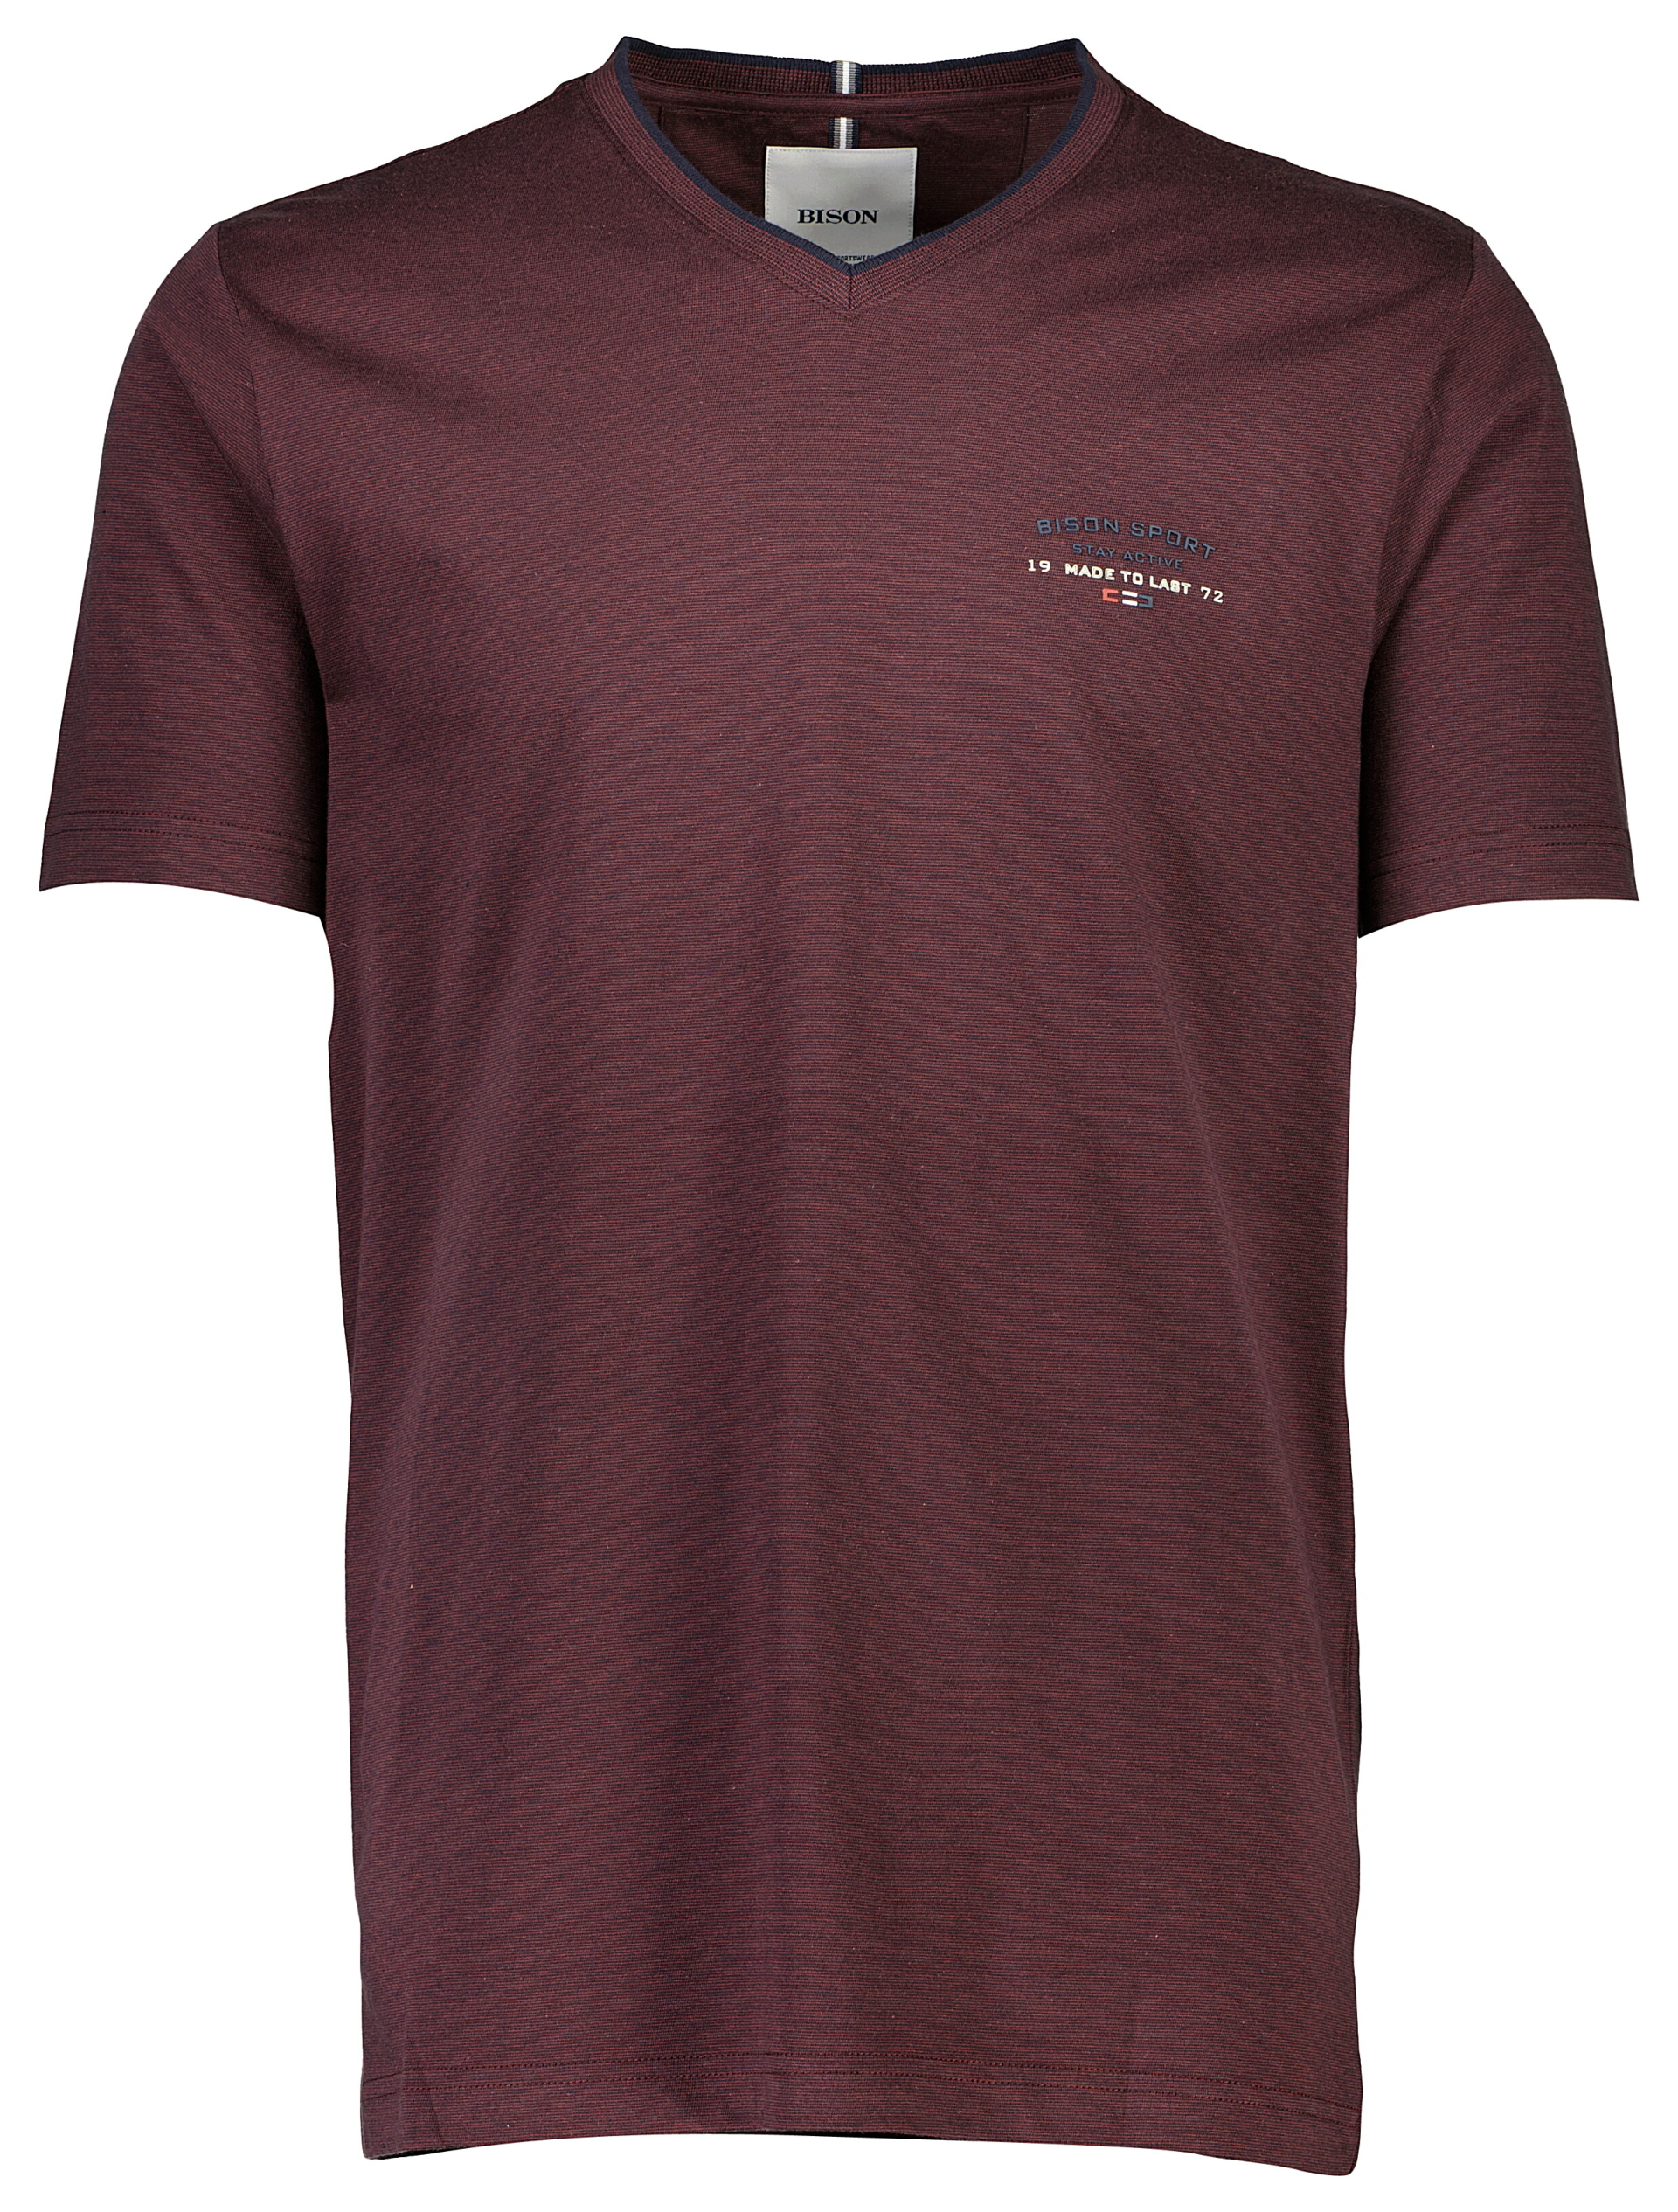 Bison T-shirt röd / burgundy